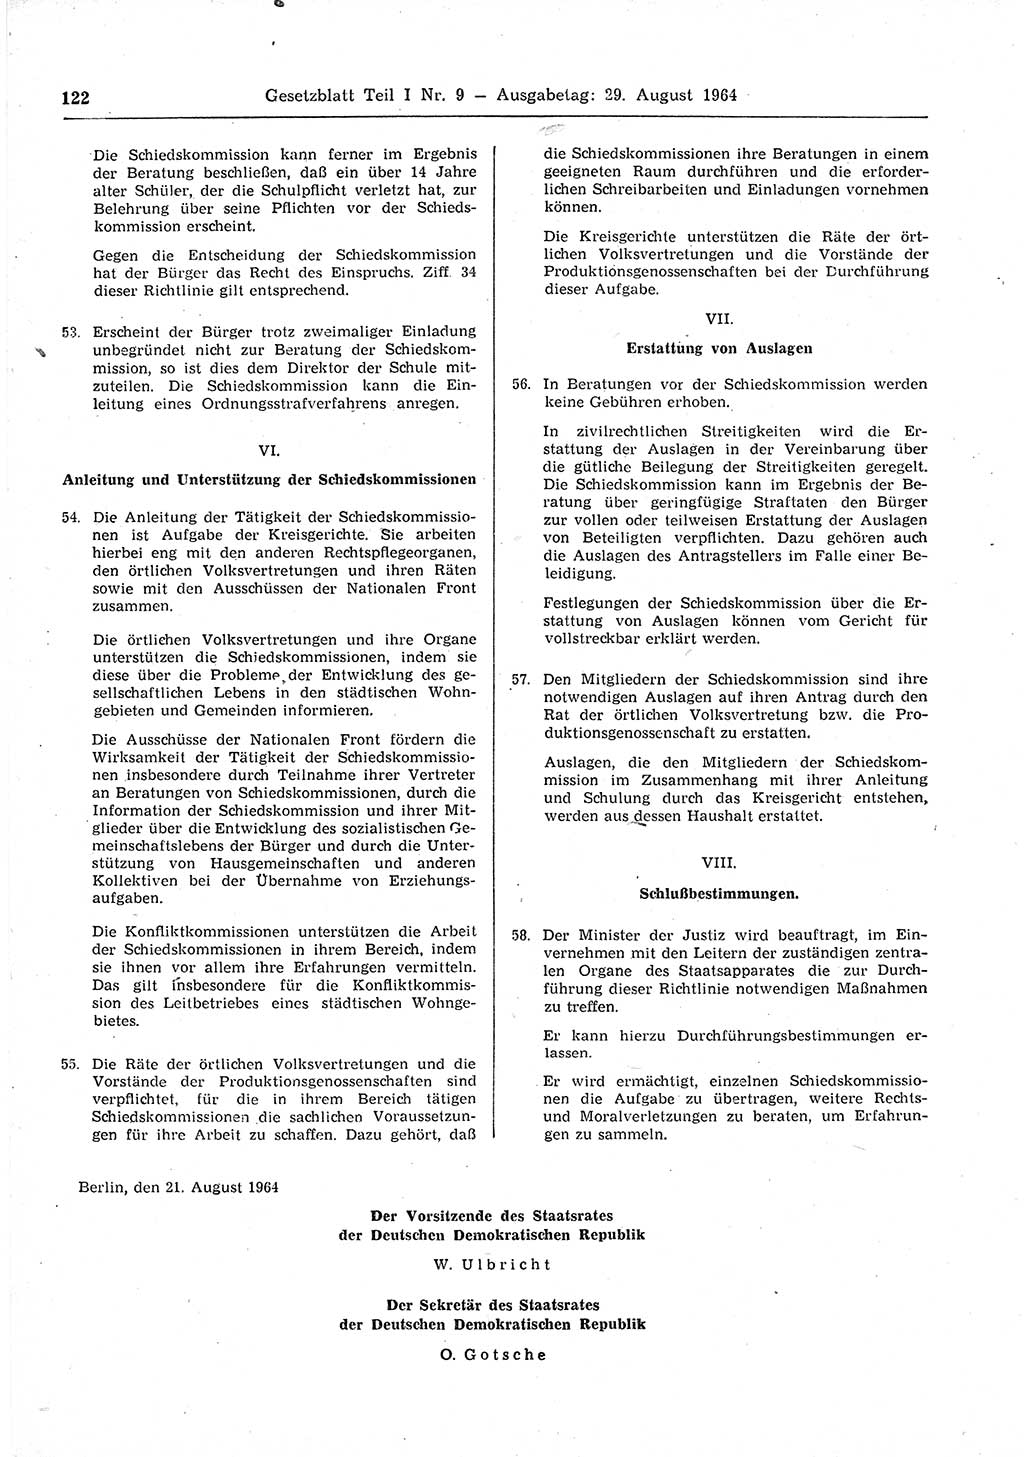 Gesetzblatt (GBl.) der Deutschen Demokratischen Republik (DDR) Teil Ⅰ 1964, Seite 122 (GBl. DDR Ⅰ 1964, S. 122)